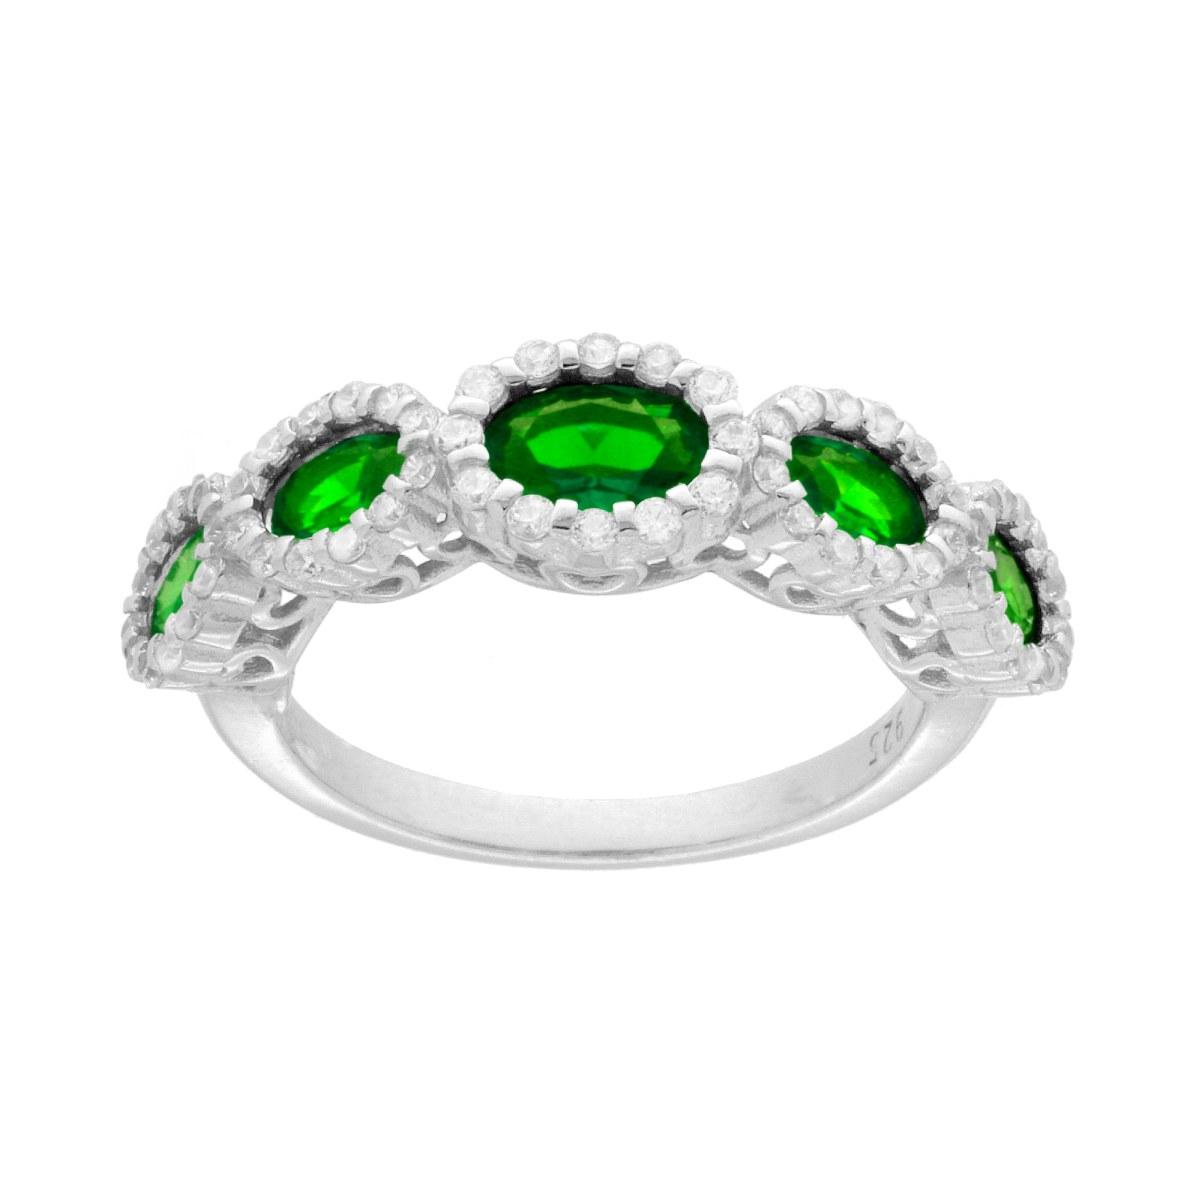 Anello Veretta con Ovali Verde Smeraldo contornati con Cubic Zirconia Bianchi in ARGENTO 925 Galvanica Rodio